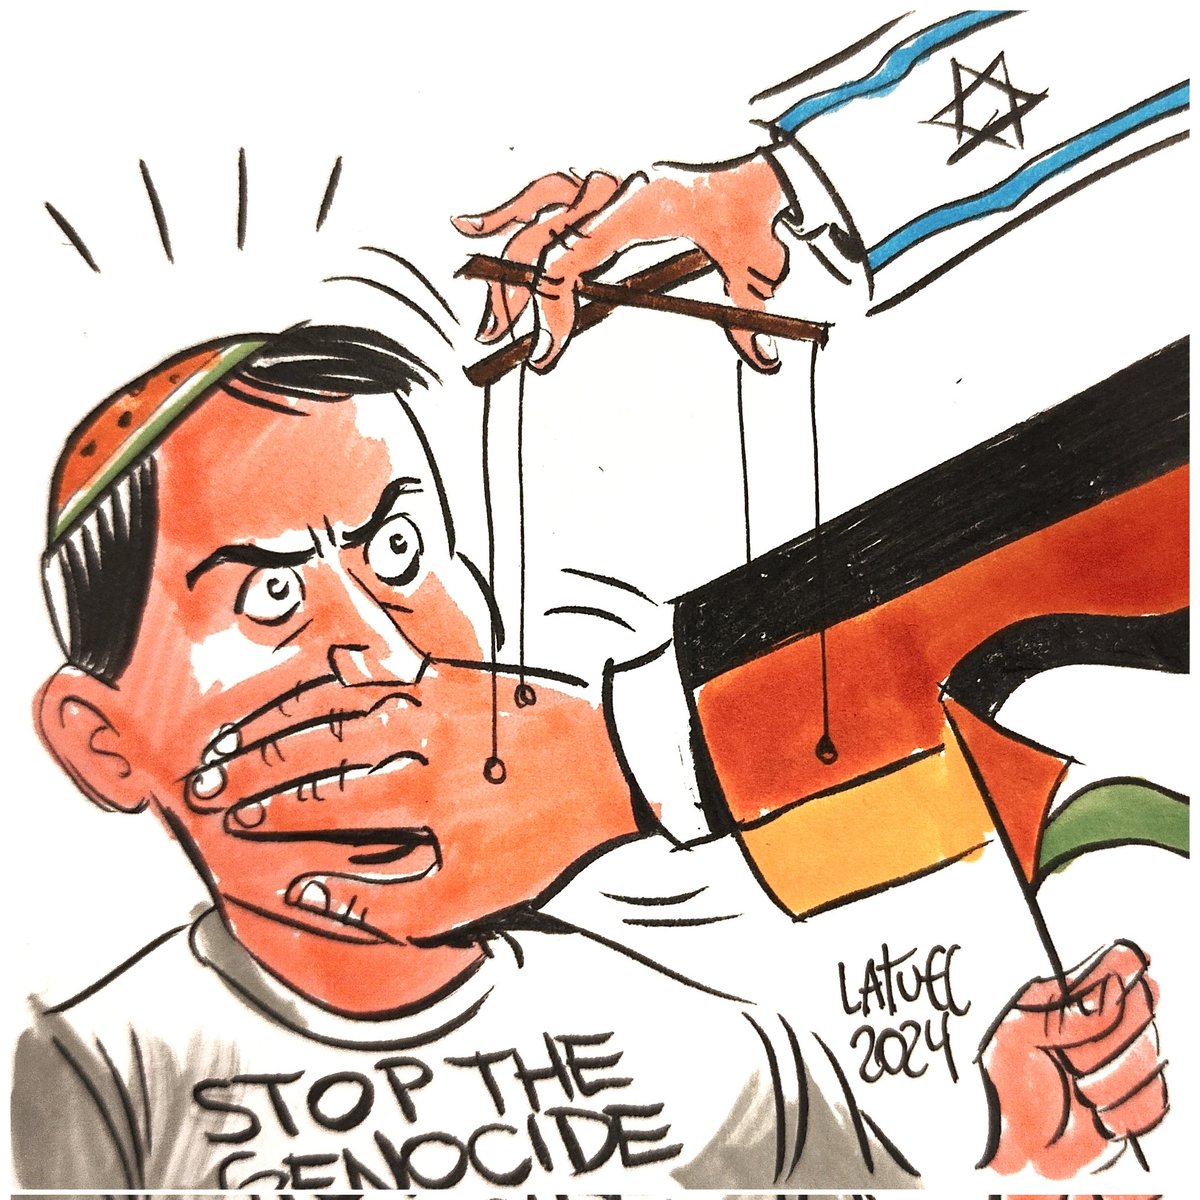 Der alten Tradition folgend, jüdische Stimmen zum Schweigen zu bringen, geht Deutschland nun auch gegen Juden vor, die sich gegen Israels Völkermord im Gazastreifen erheben. Beschämend, aber nicht überraschend.